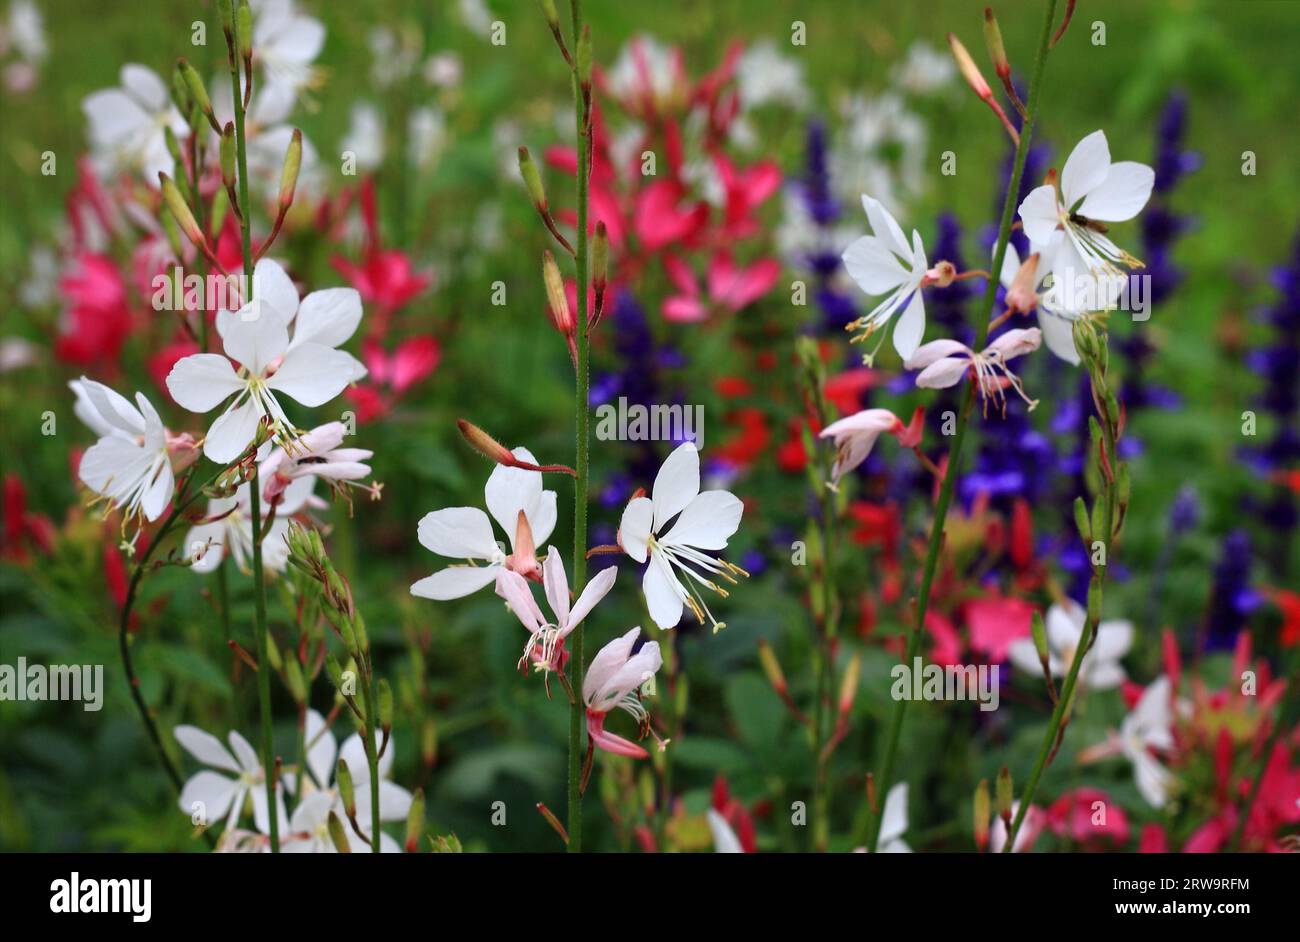 Splendide candele bianche davanti a piante in fiore rosse, blu e bianche in un giardino, foto full-frame con profondità di campo Foto Stock